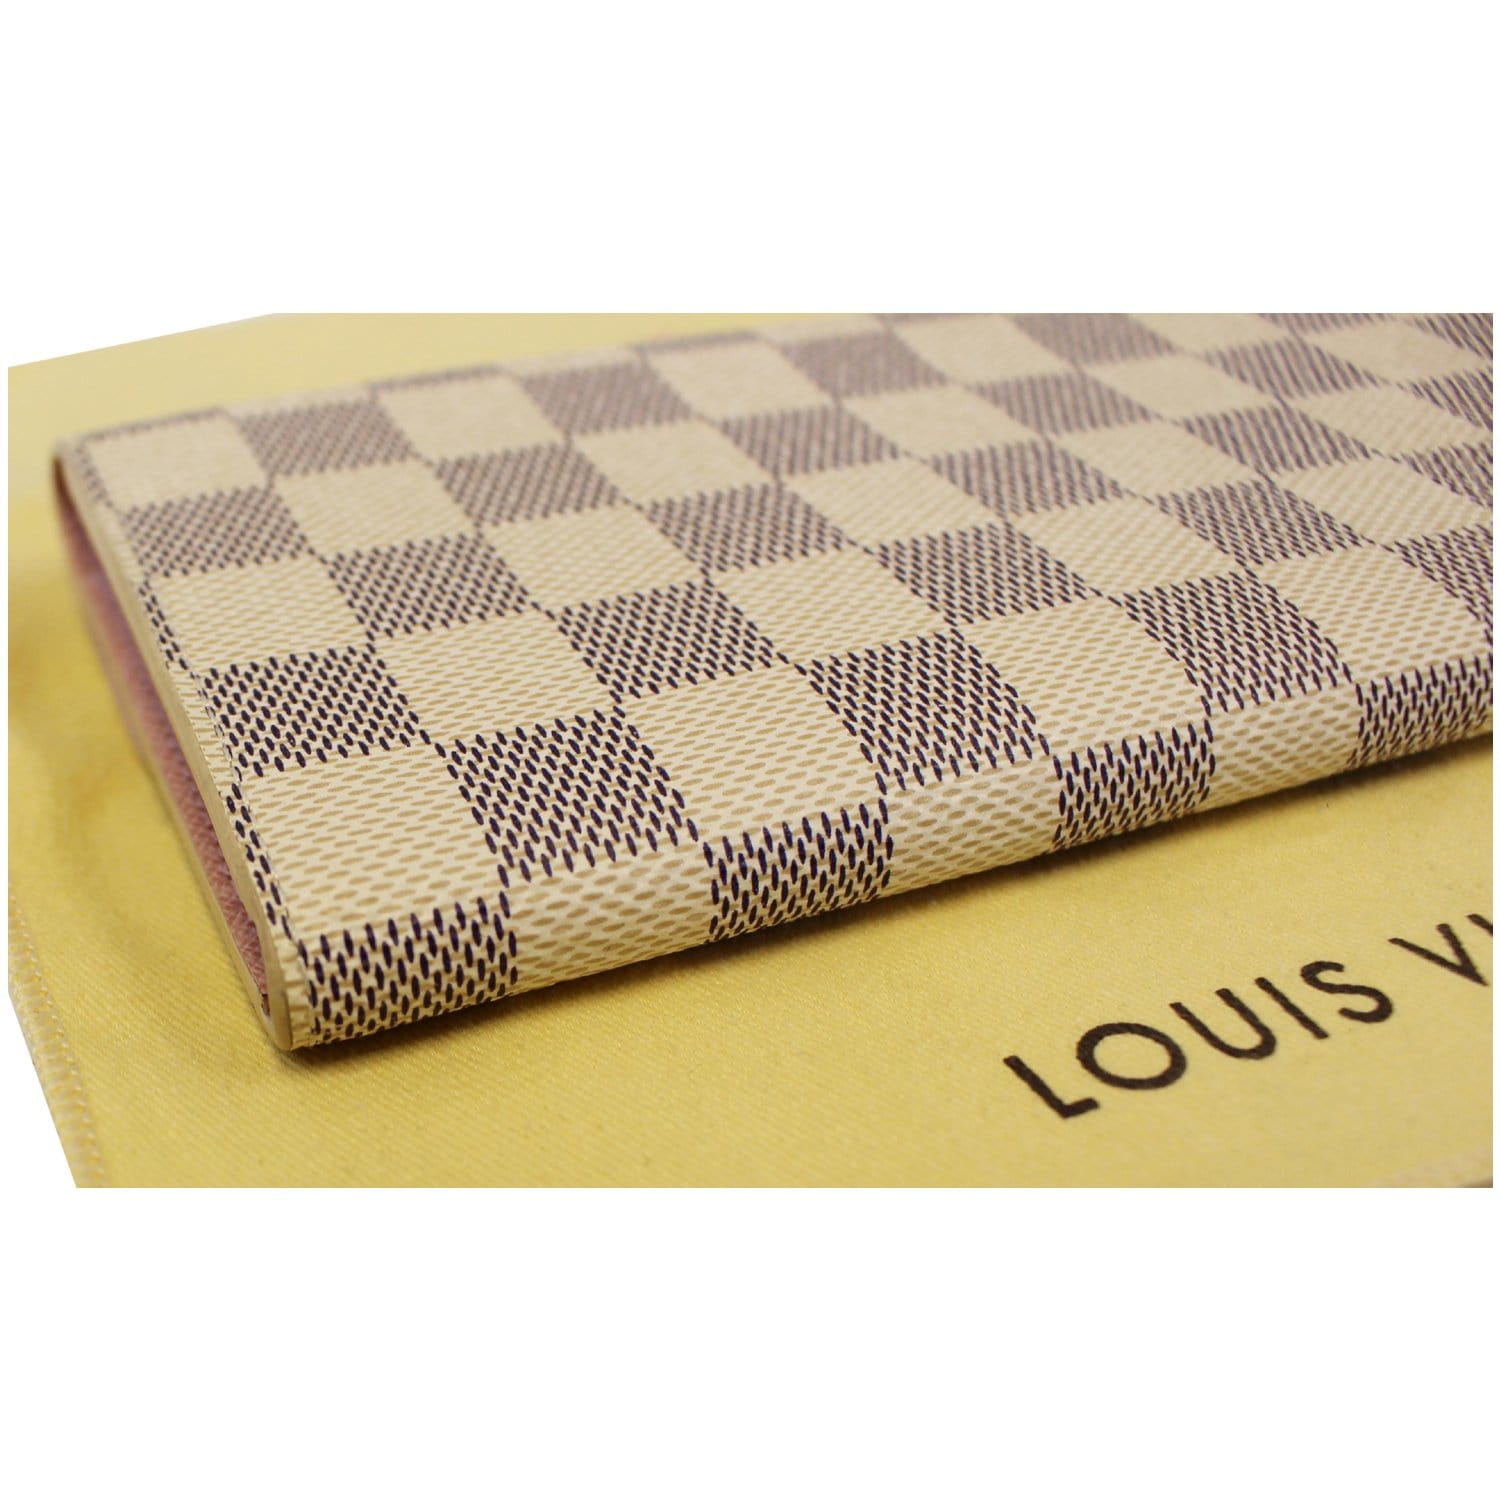 Louis Vuitton wallets Damier beige Damier canvas Authentic T18981